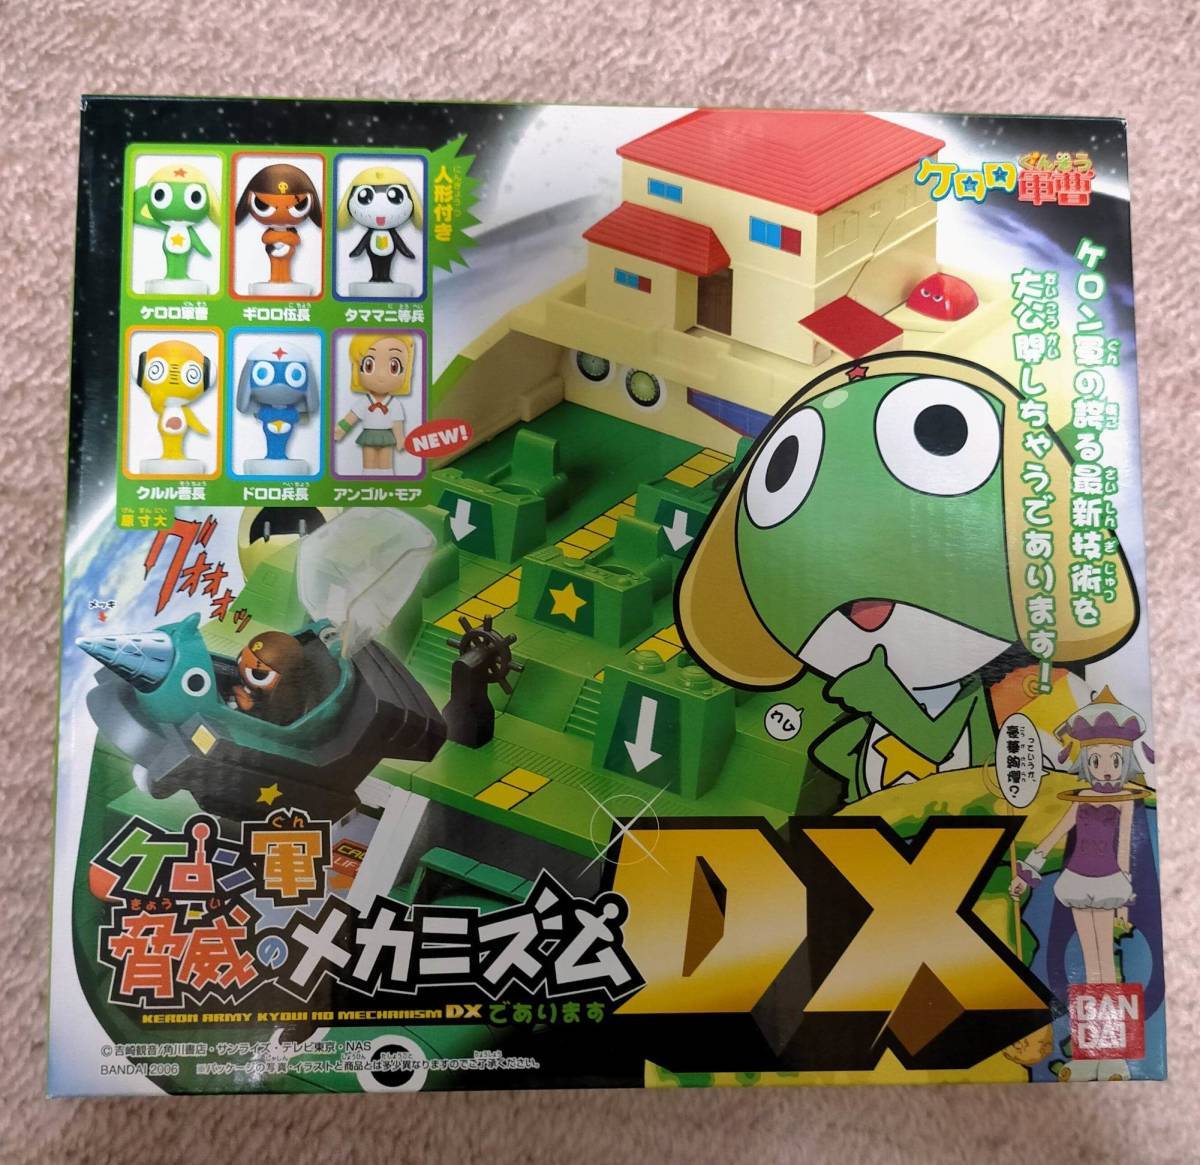 ケロロ軍曹 BANDAI ケロン軍 驚異のメカニズム であります DX 新品 秘密 基地 プラモデル Sgt. Frog Keroro Secret base kit plastic model